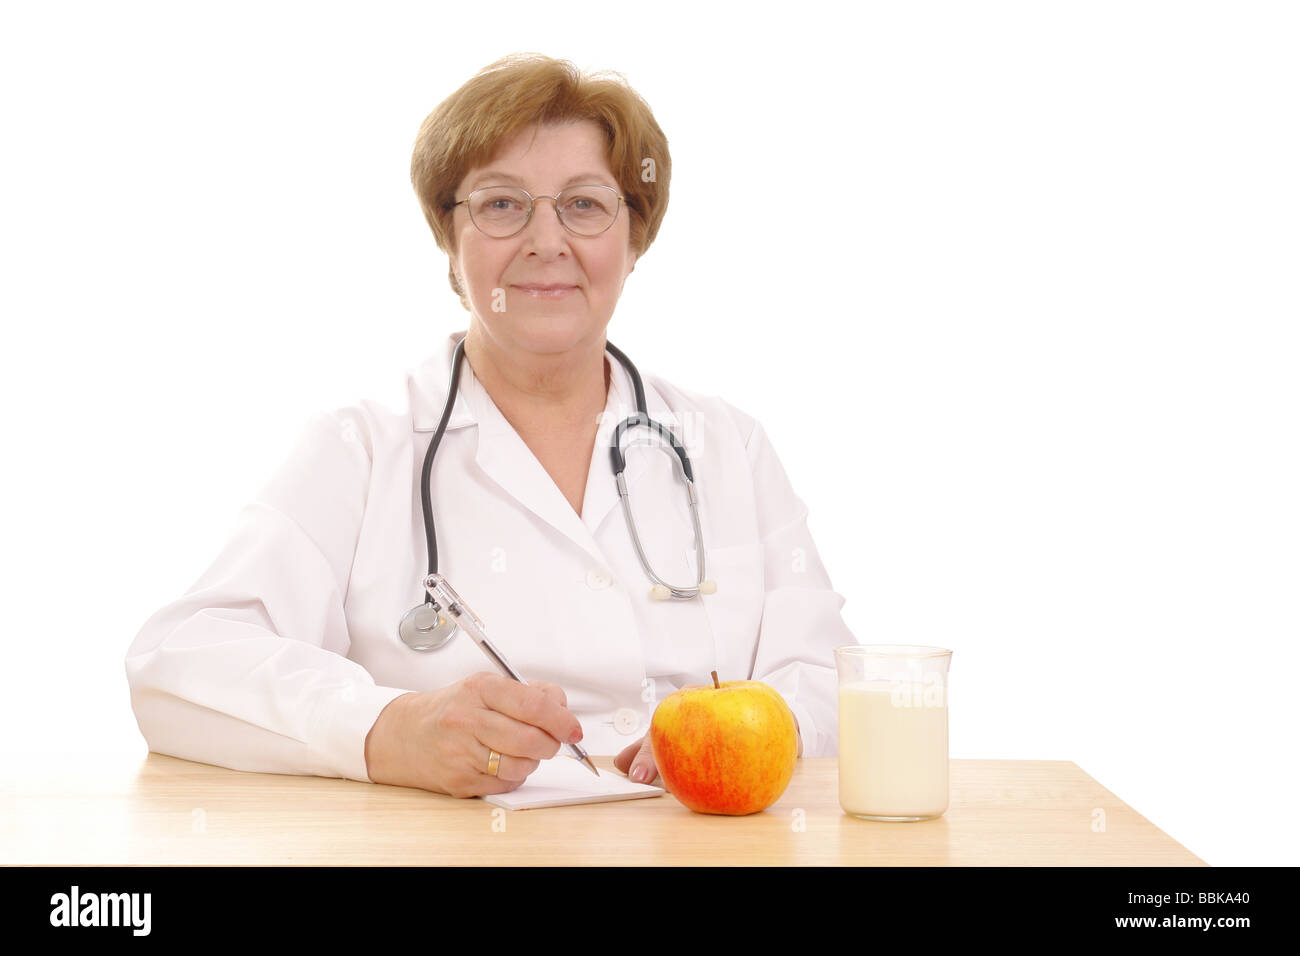 Senior female doctor sitting behind desk avec verre de lait et apple isolé sur fond blanc Banque D'Images